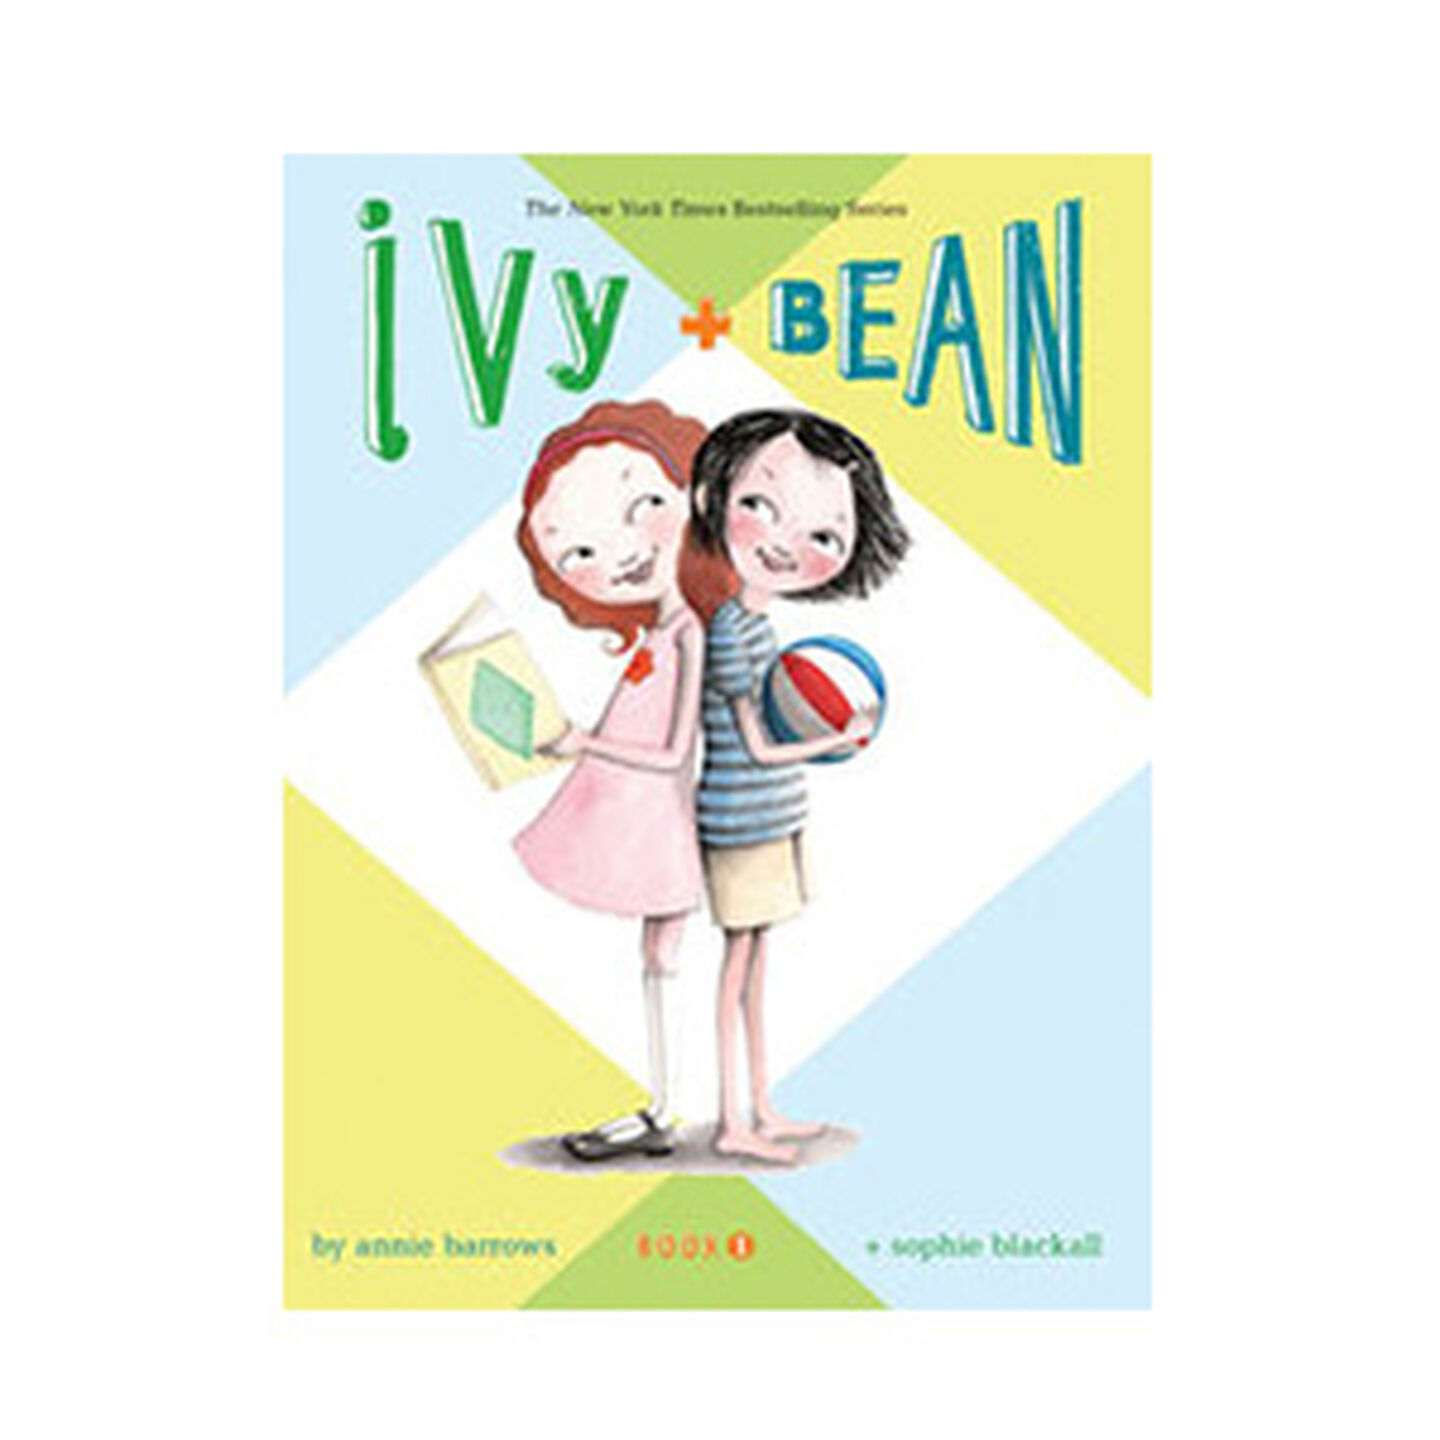 Ivy + Bean: Book 1